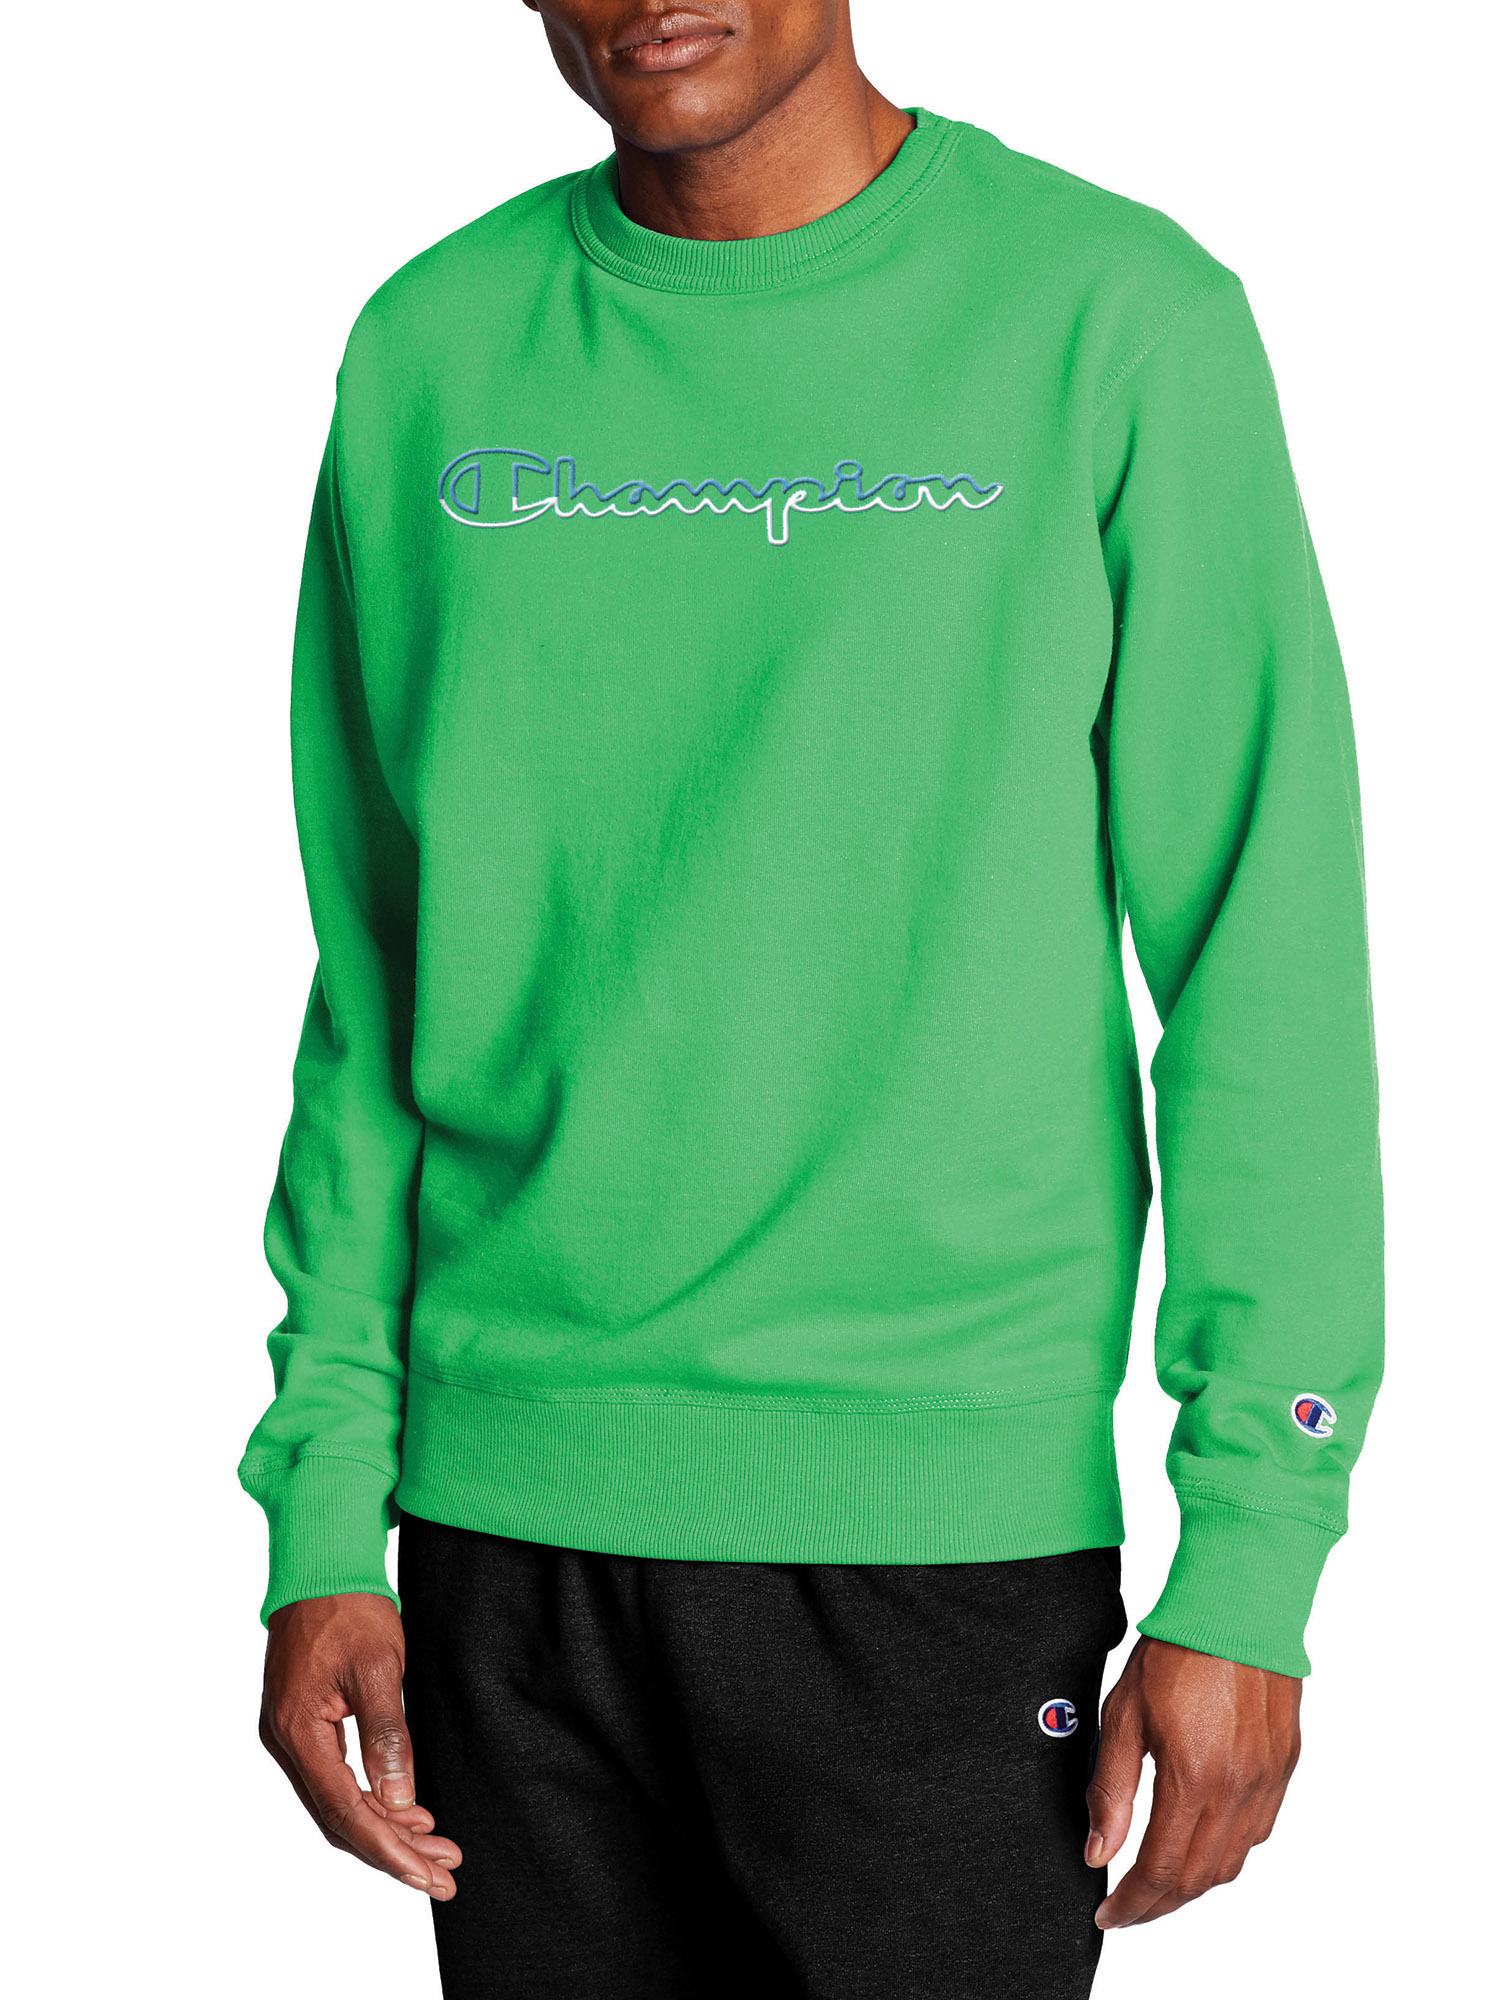 Champion Men's Powerblend Fleece Crew Sweatshirt with Split Script Logo - image 1 of 6